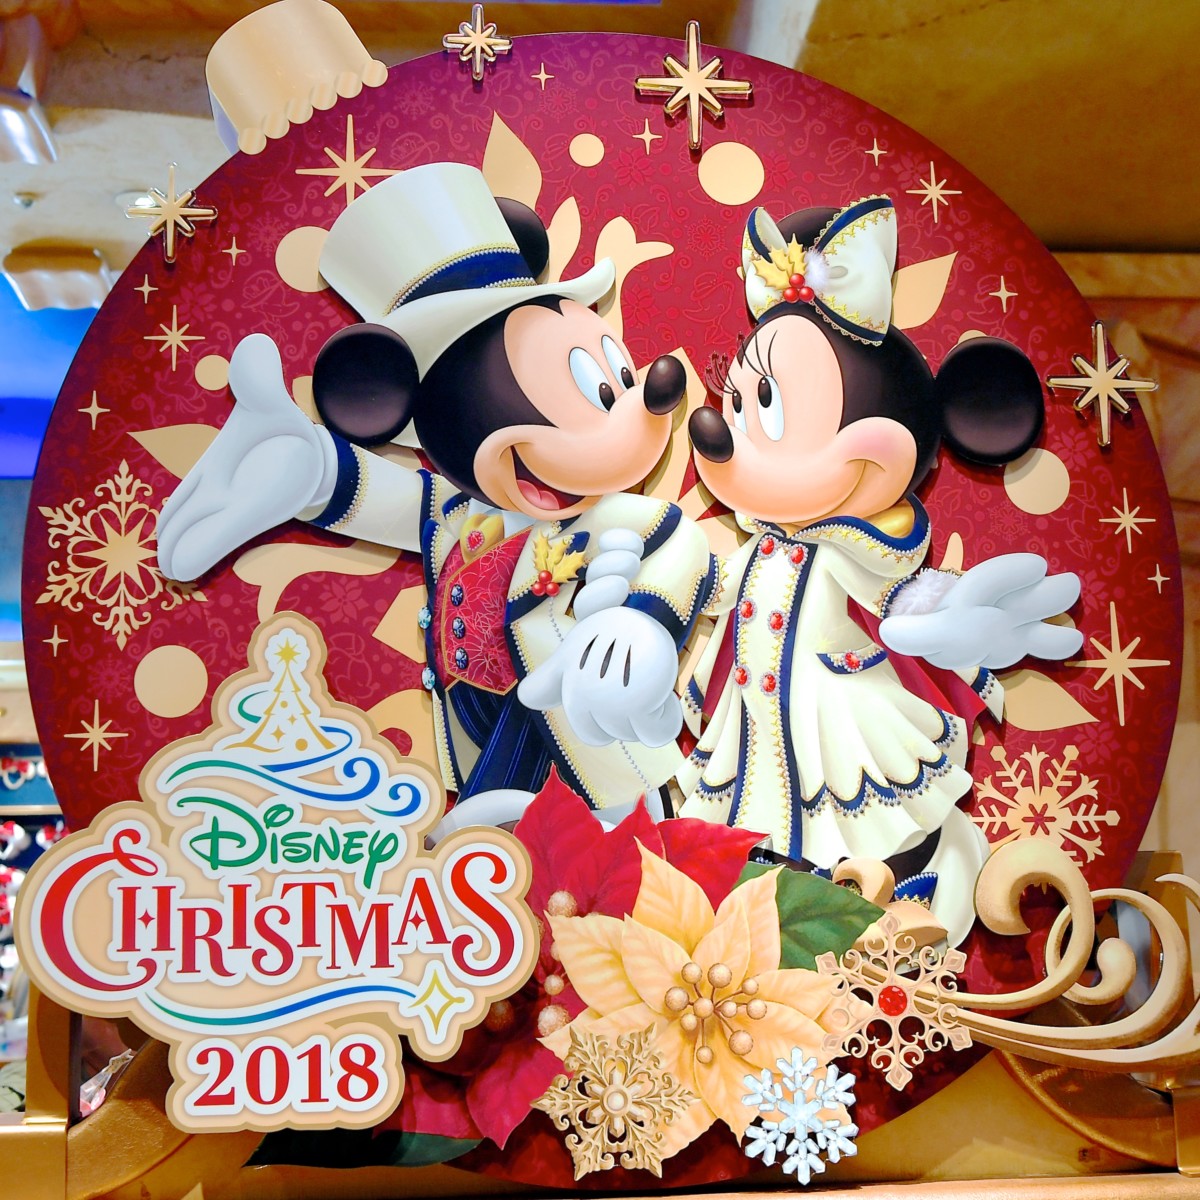 ショッピングバッグ ディズニークリスマス15 メインデザイン 東京ディズニーリゾート限定 グッズ お土産 Q2erl573qf Www Cedar Org